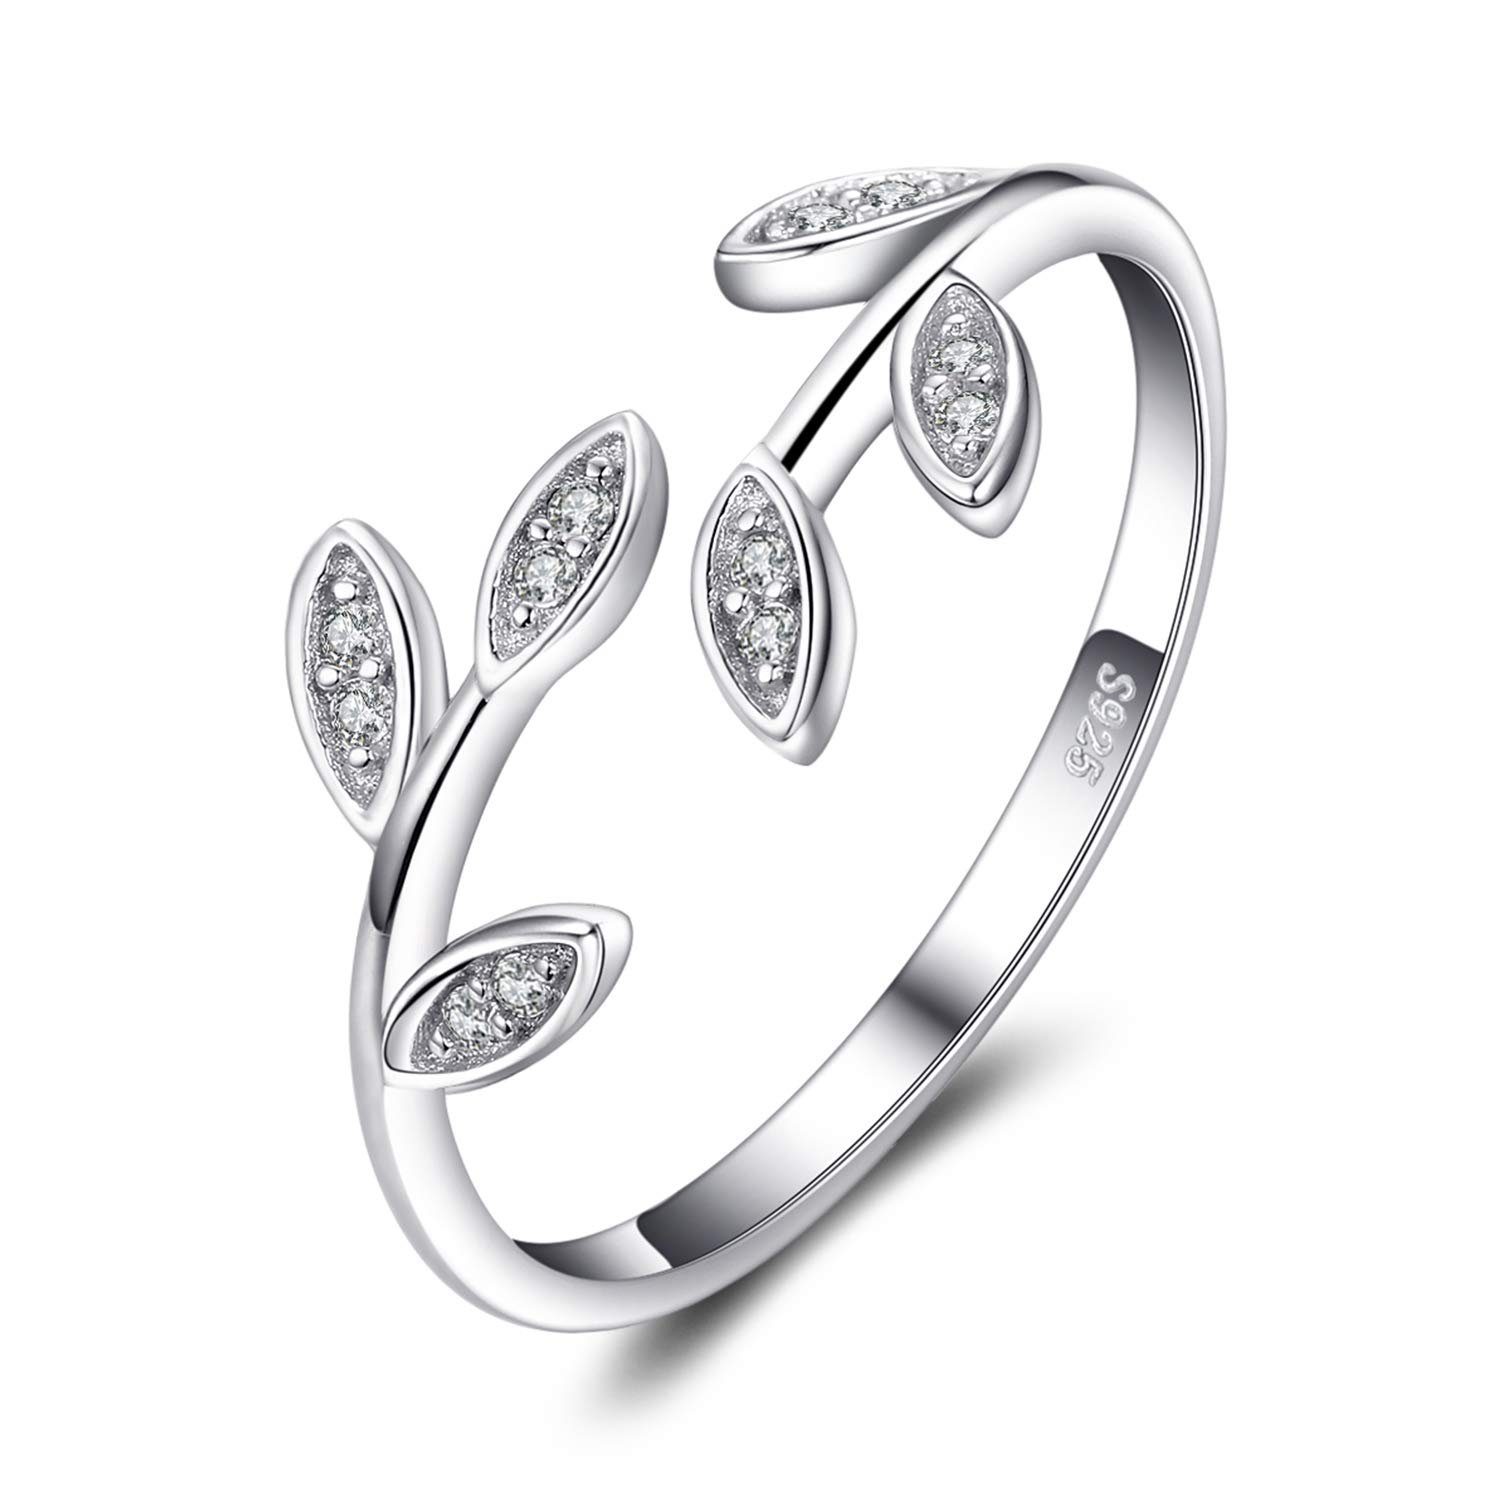 POCHUMIDUU Fingerring S925 Sterling Silber Olivenzweig Frauen Ring, Silberschmuck für Frauen aus 925er Sterlingsilber